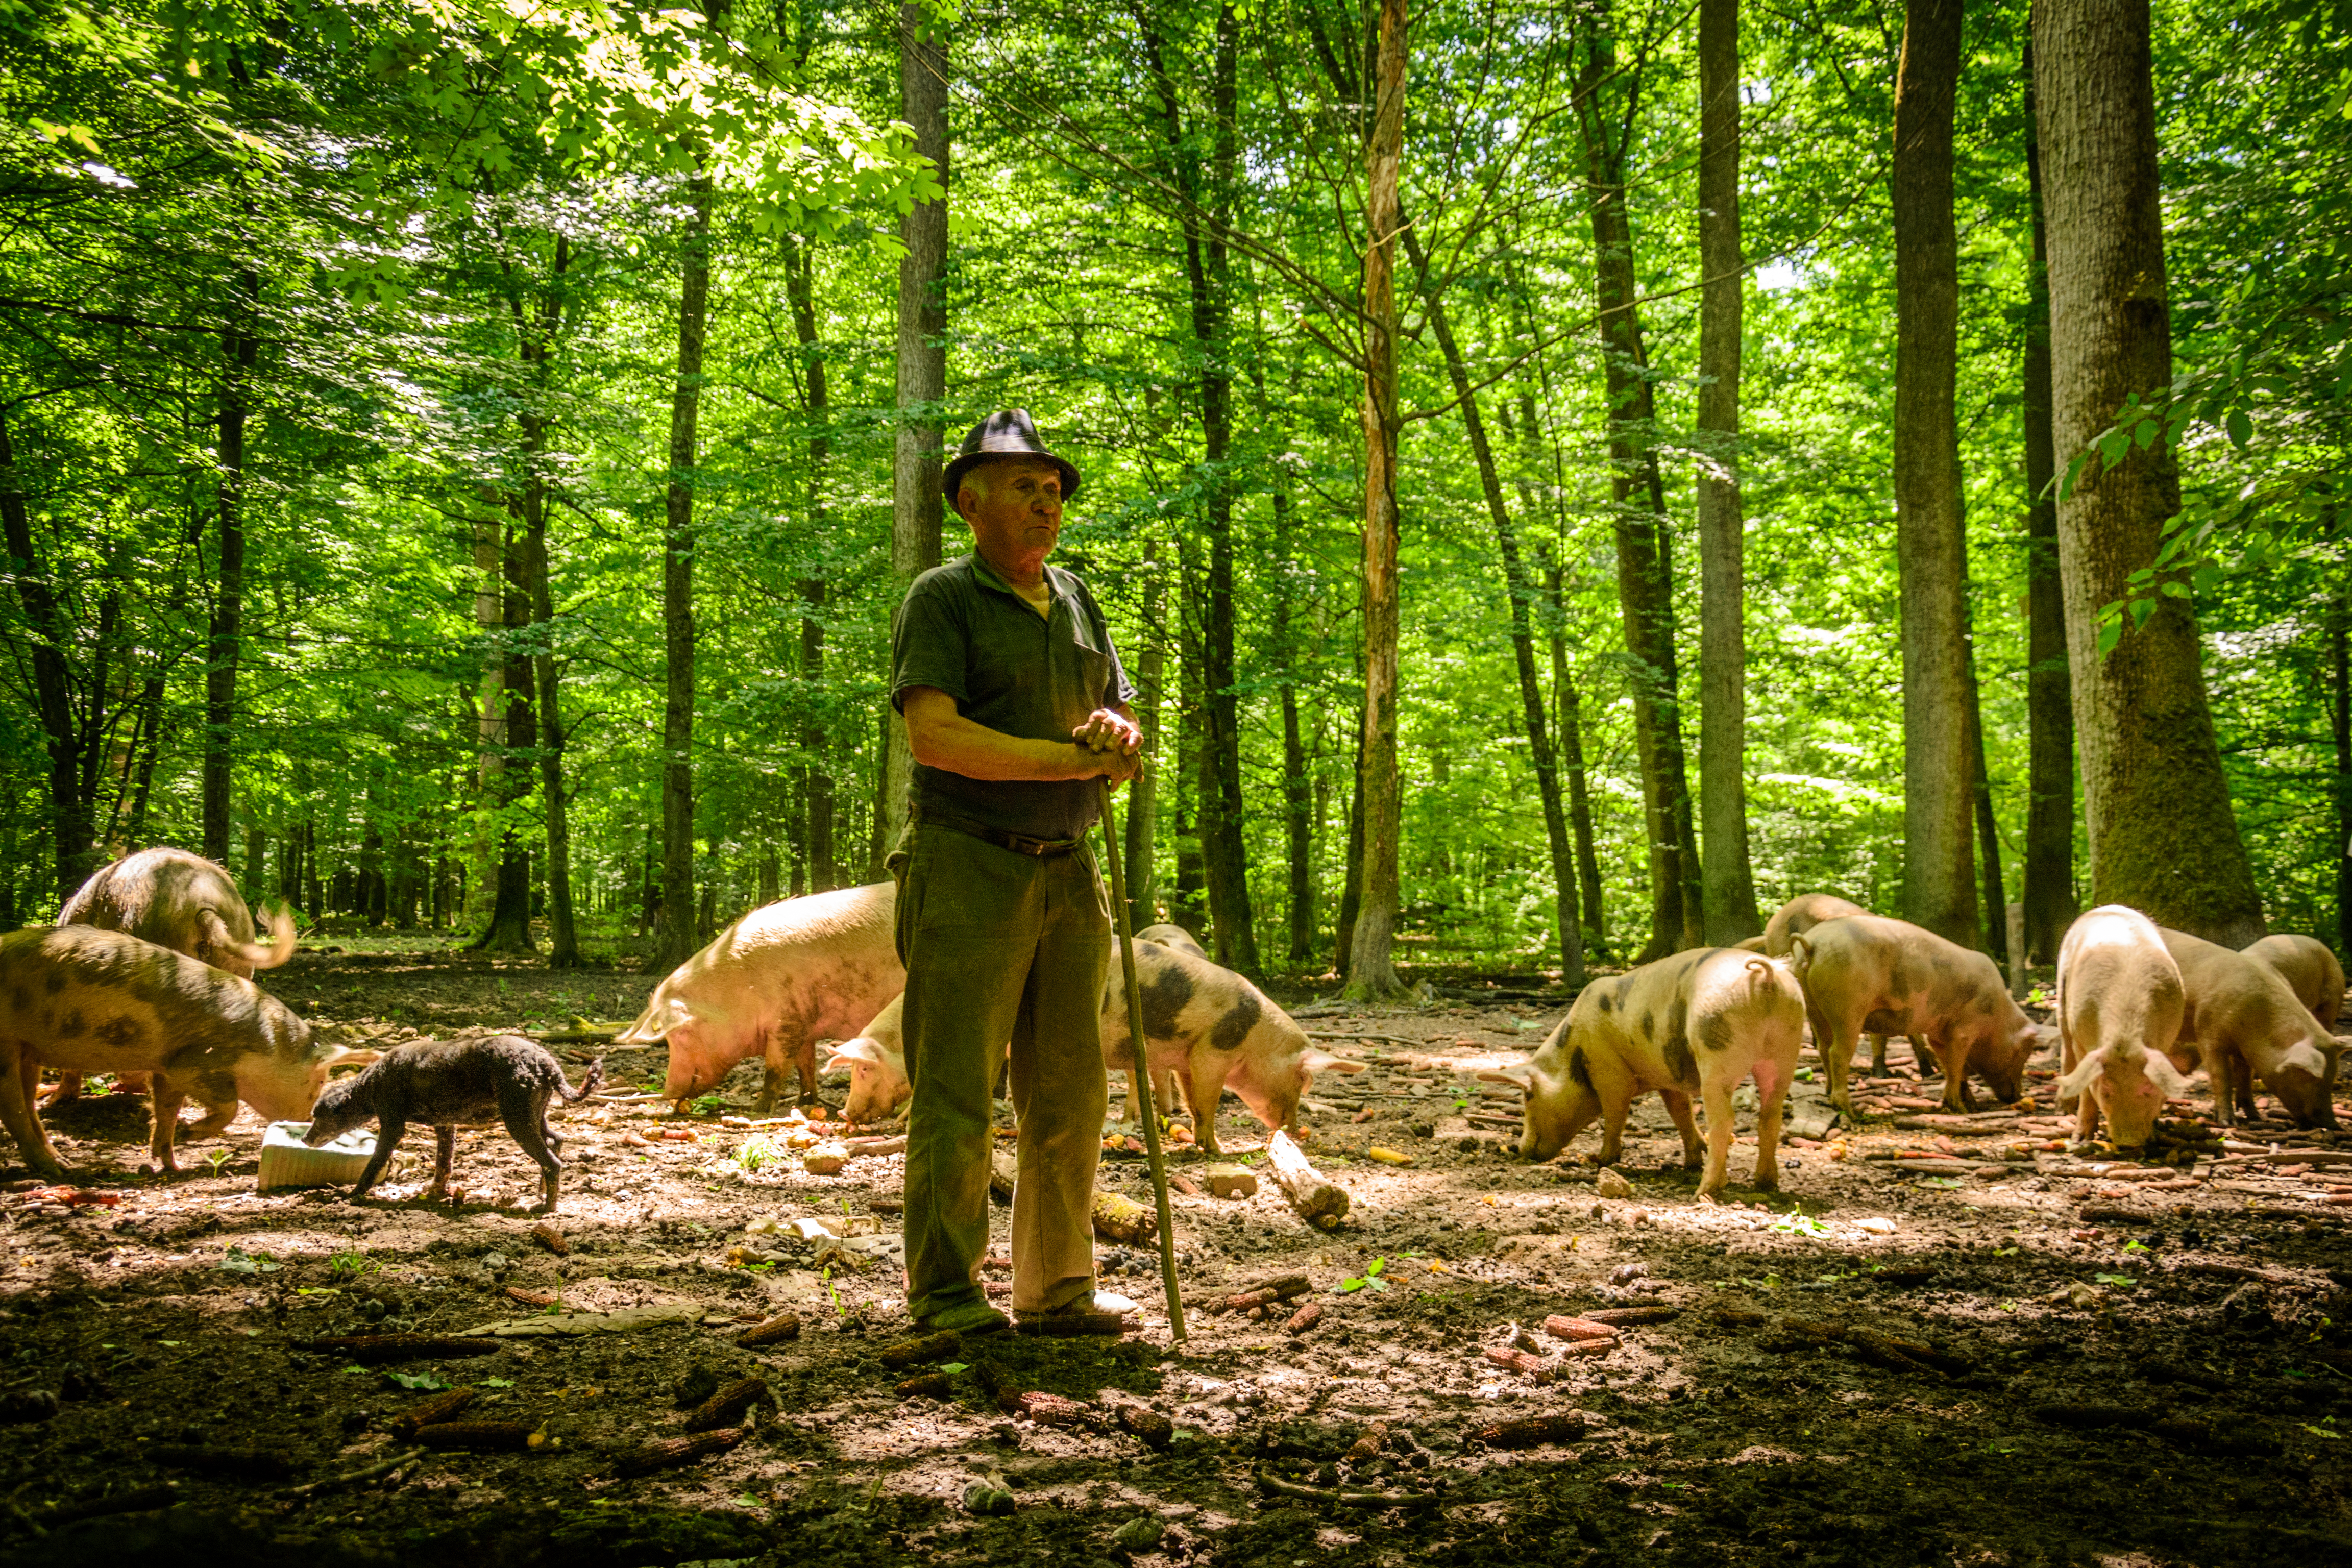 Pig herder in Serbia